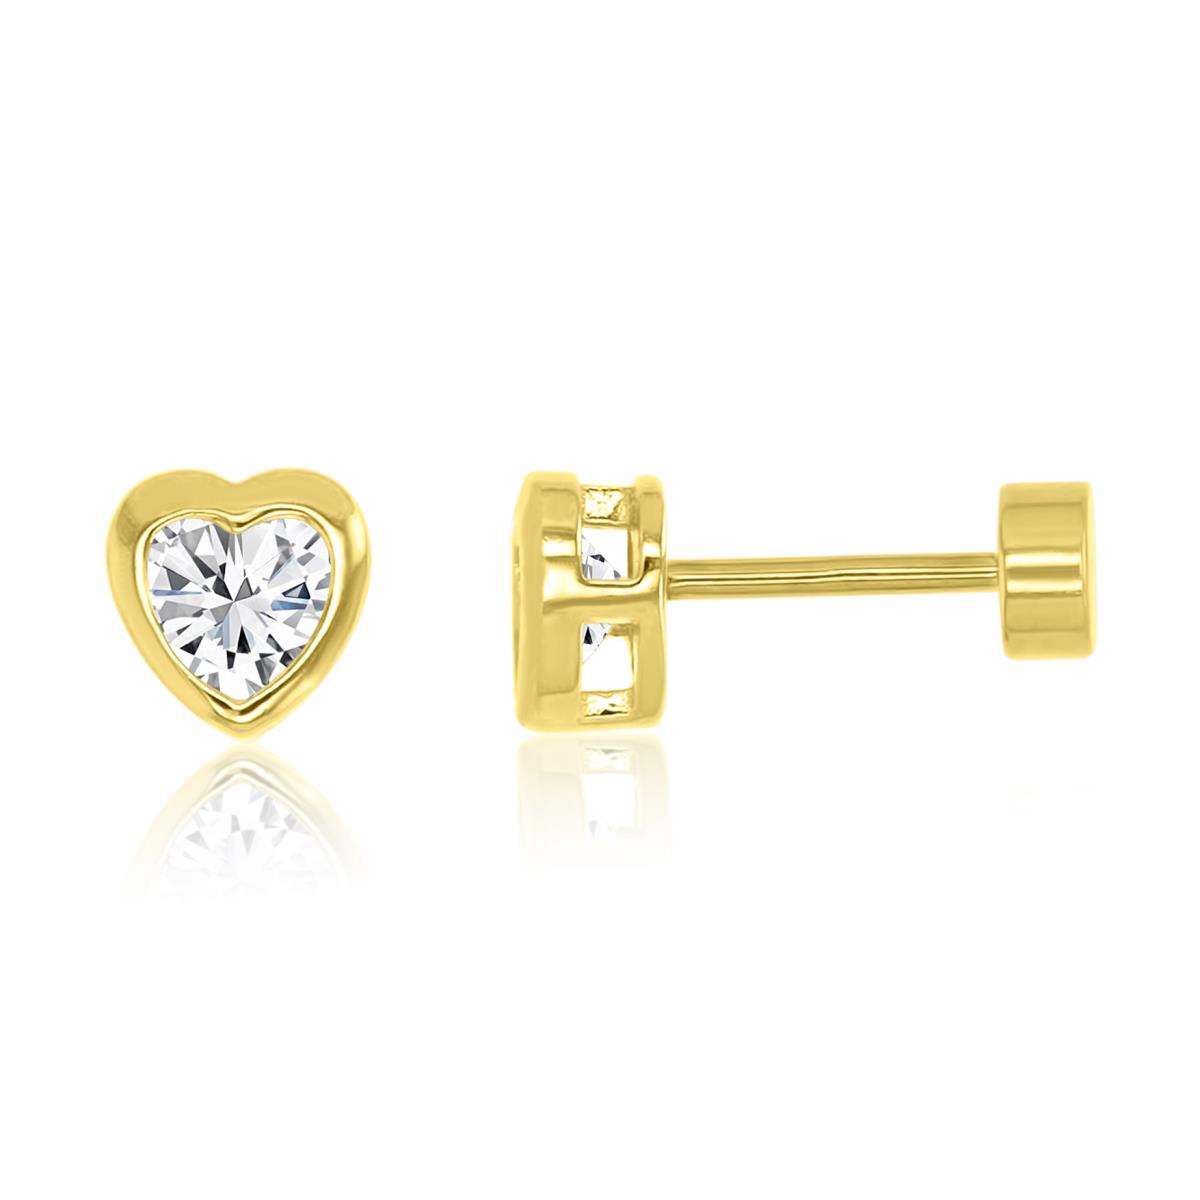 14K Yellow Gold 5MM Polished White CZ Bezel Heart Flat Back Stud Earrings